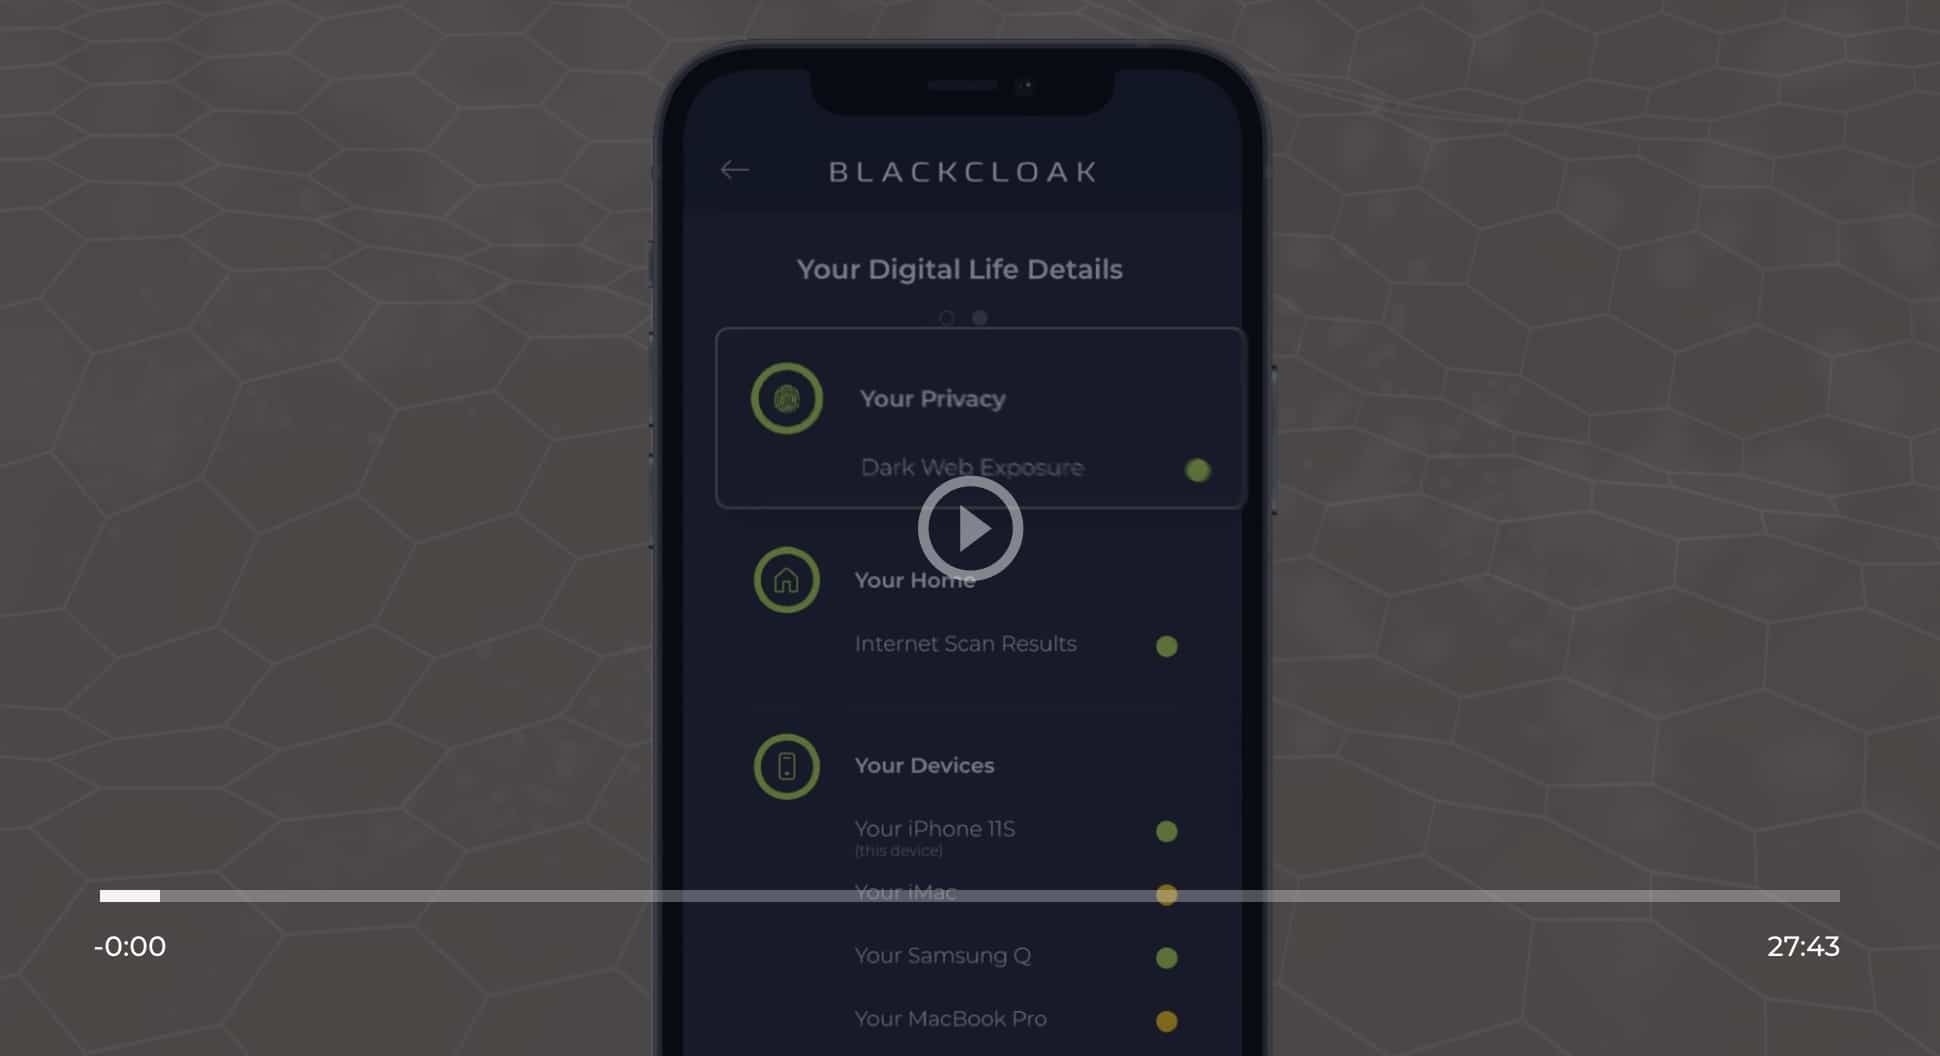 BlackCloak Persoanl Device Protection App Explainer Video